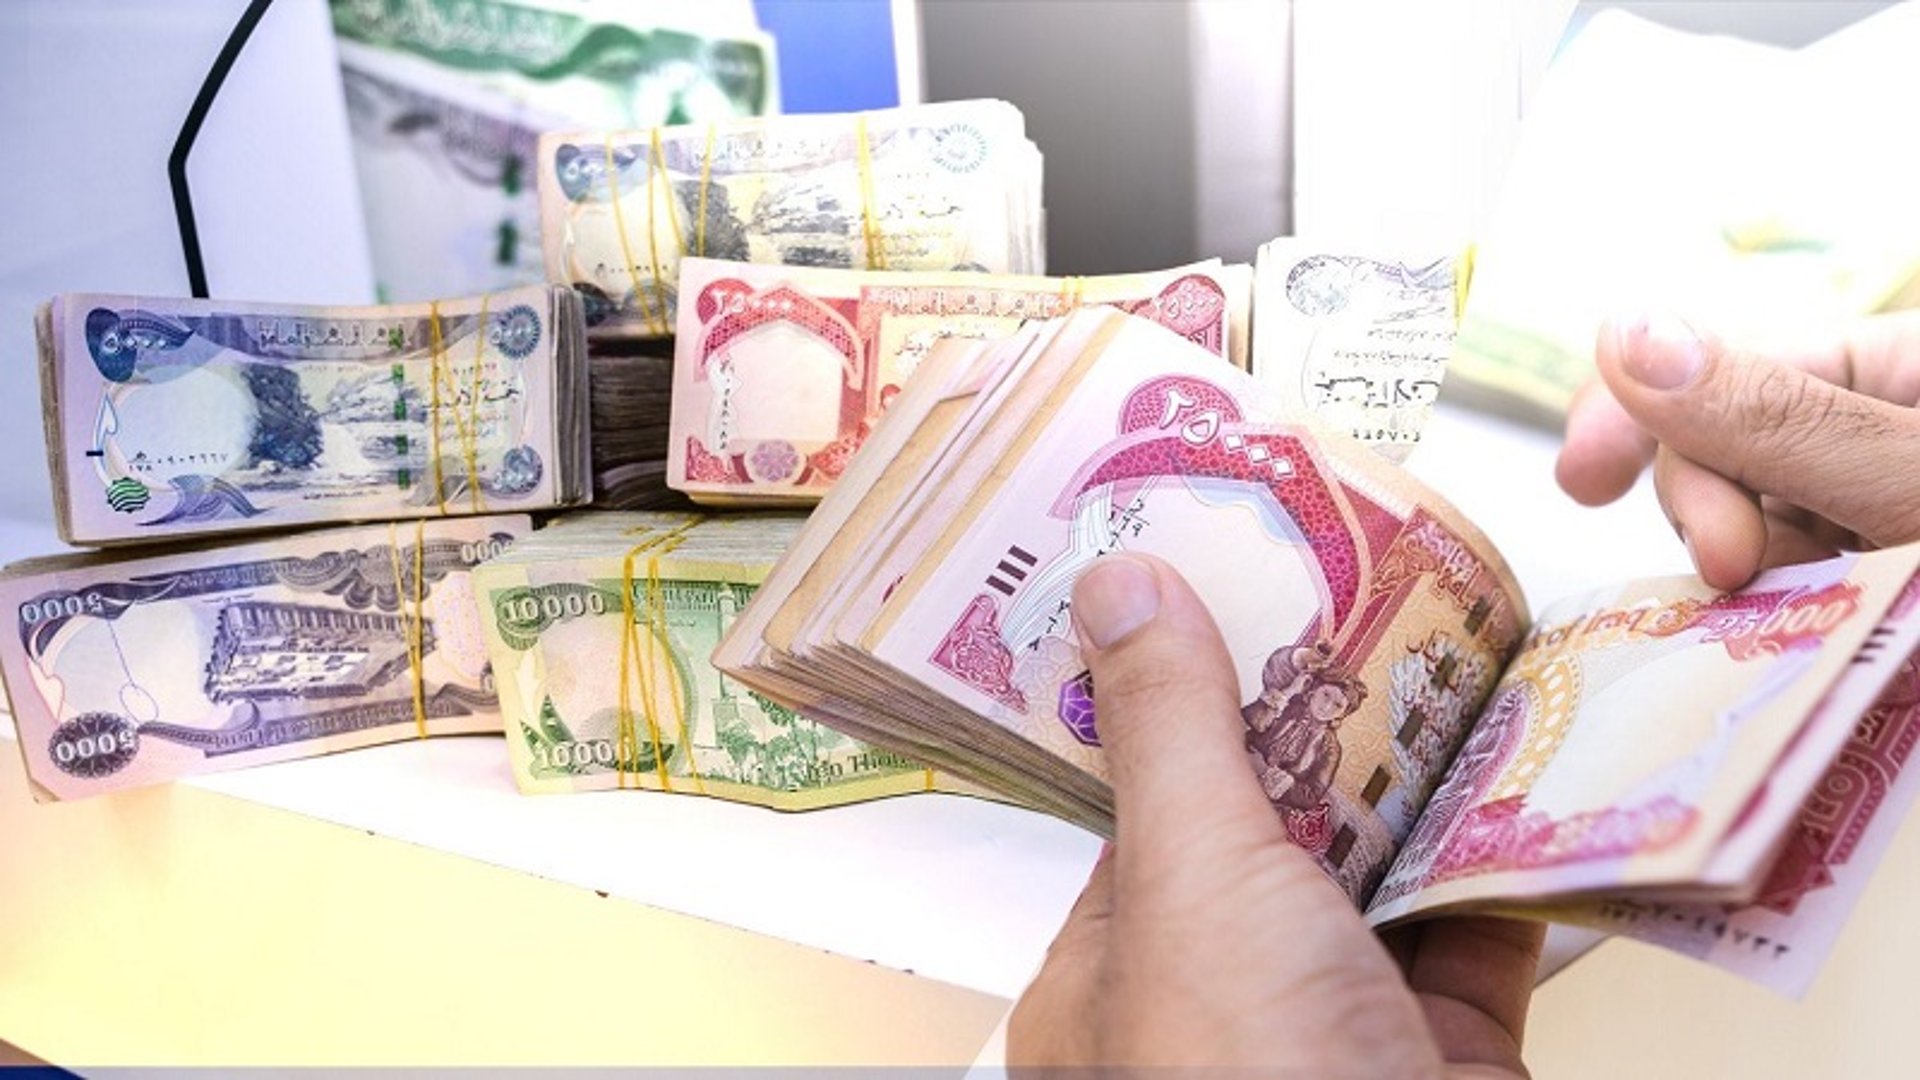 مالية كردستان تنشر جدول رواتب الموظفين وتباشر بتوزيعها غداً